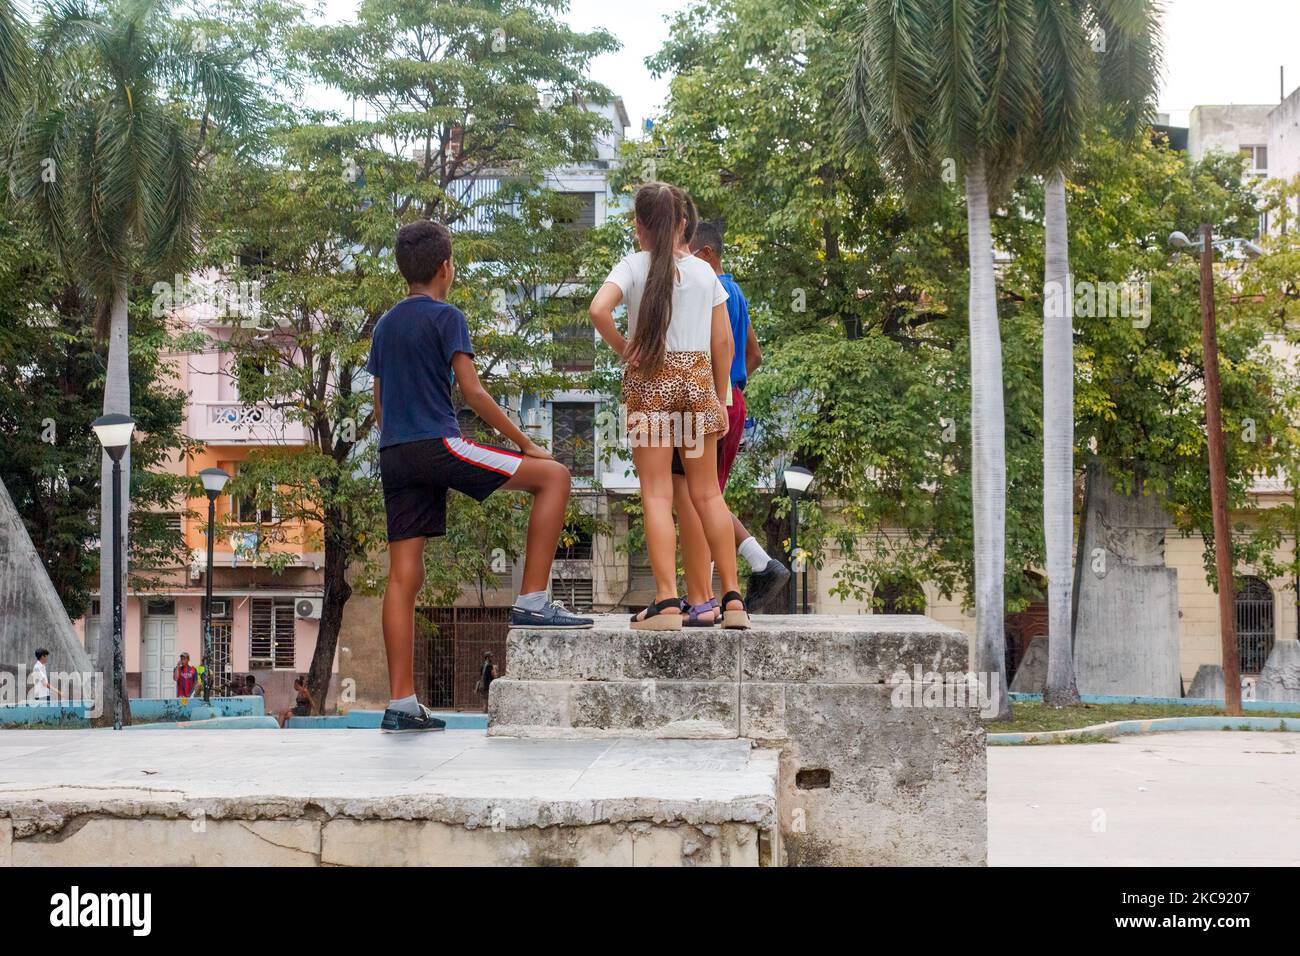 Los jóvenes cubanos están en la parte superior de un muro de un parque público. Foto de stock